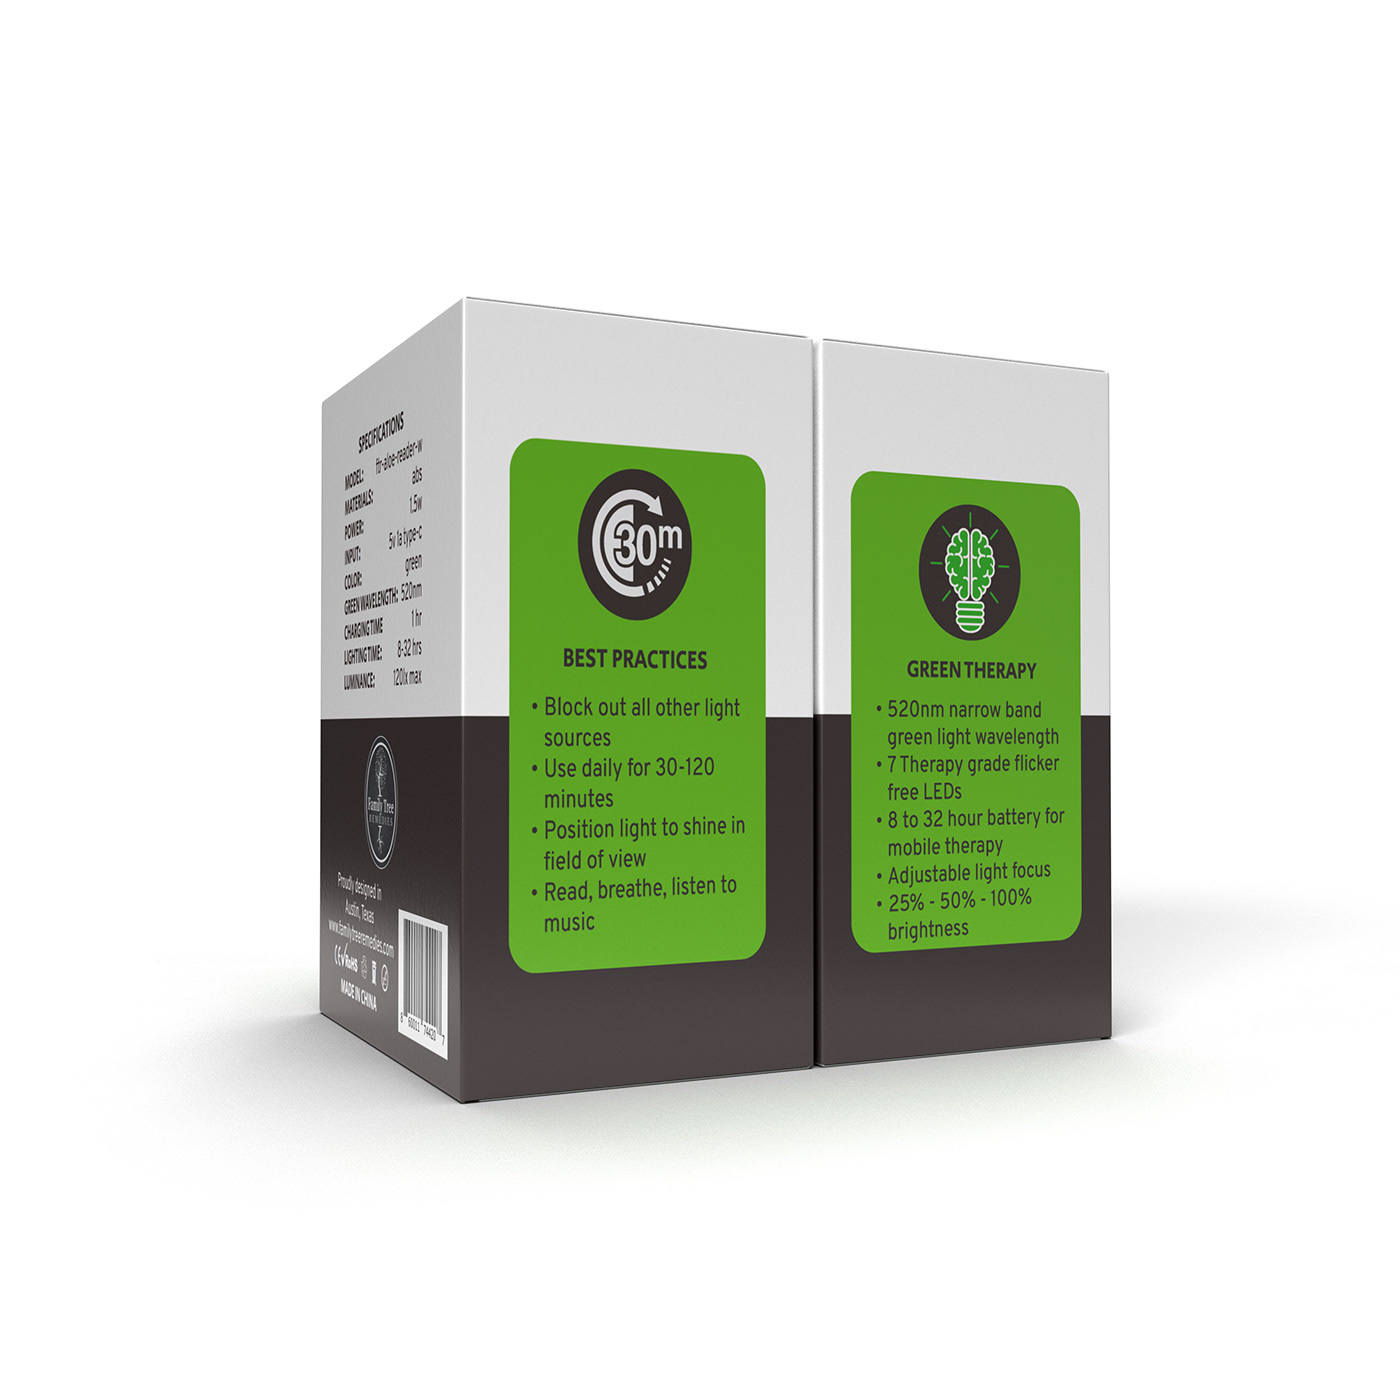 box design Mockup packaging design 3d modeling Render visualization modern box Packaging